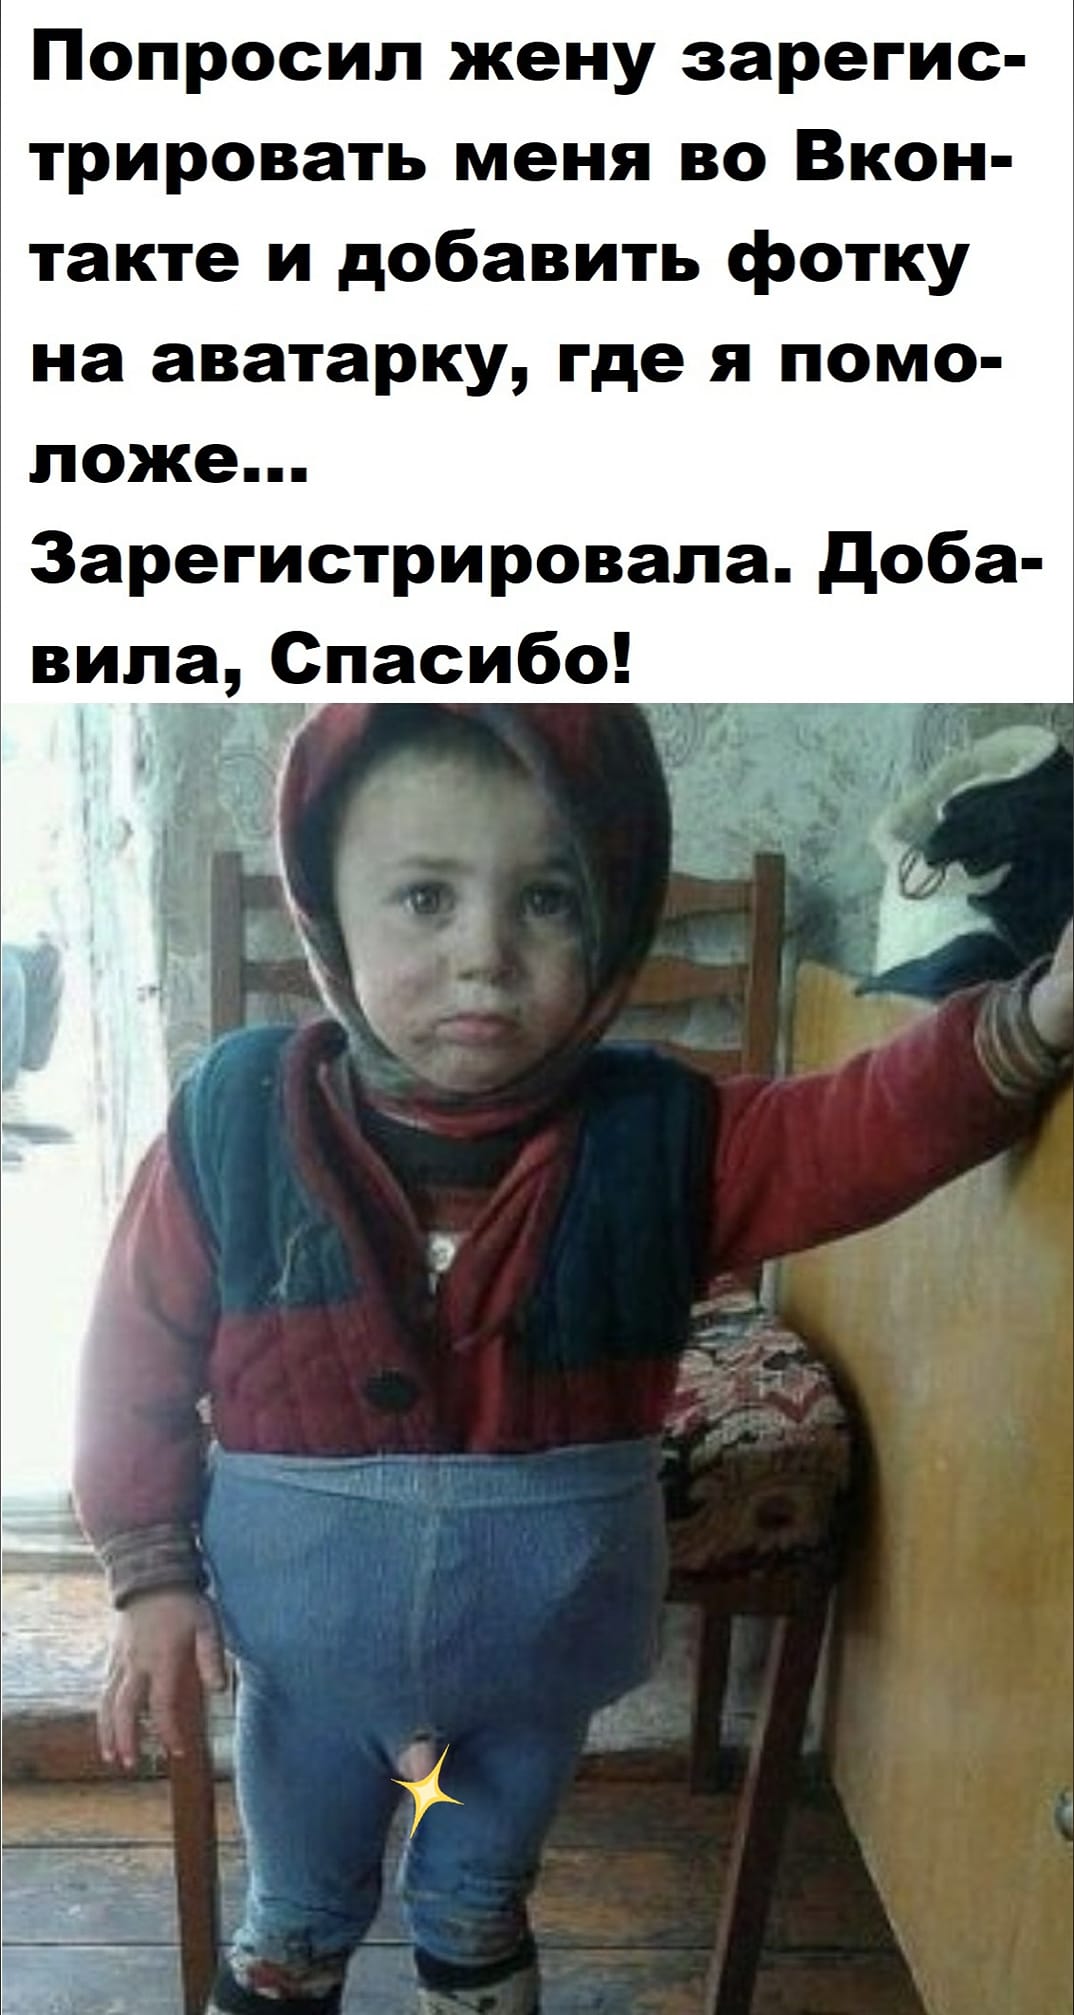 Дочь нового русского говорит с плачем своему мужу...